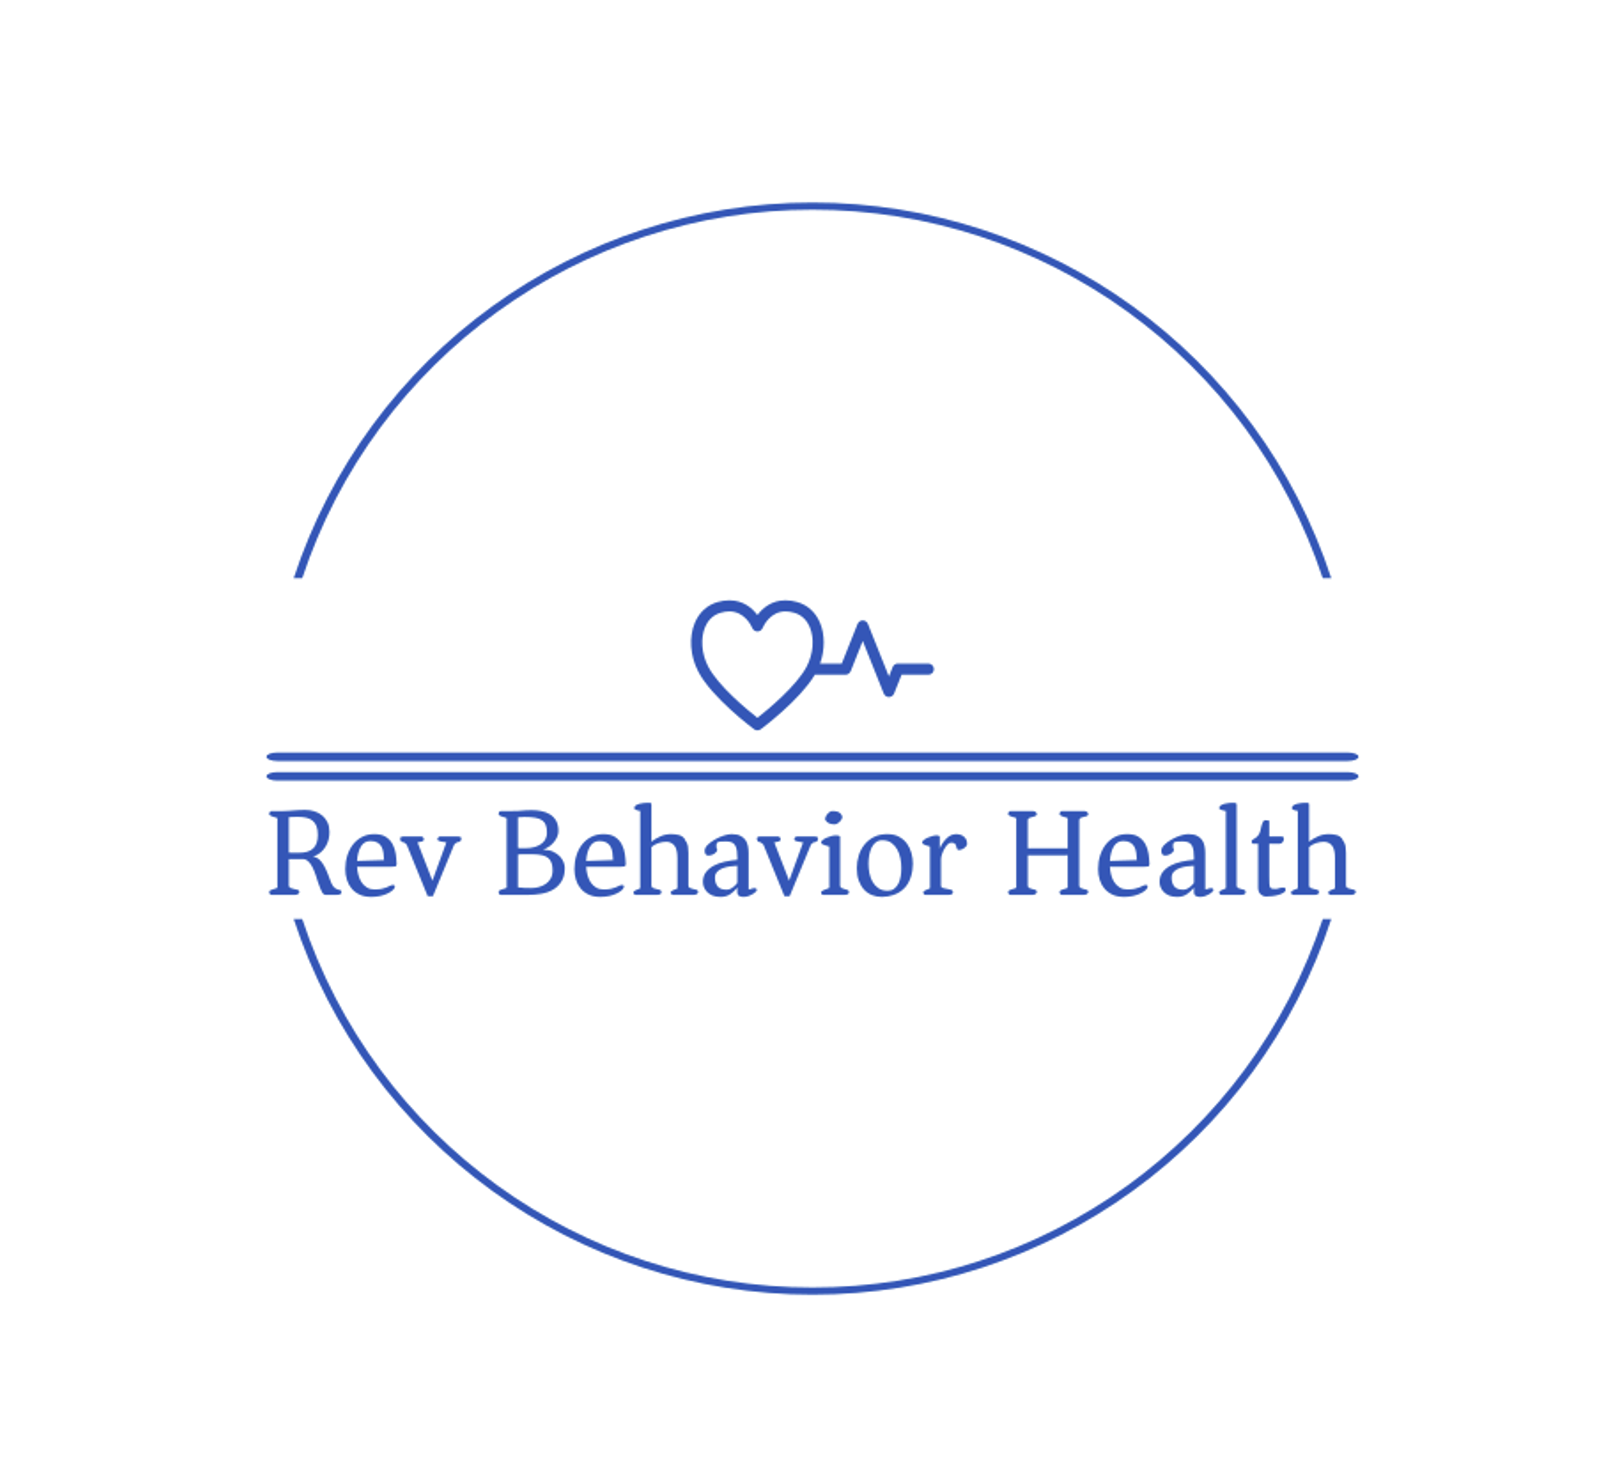 Rev Behavior Health